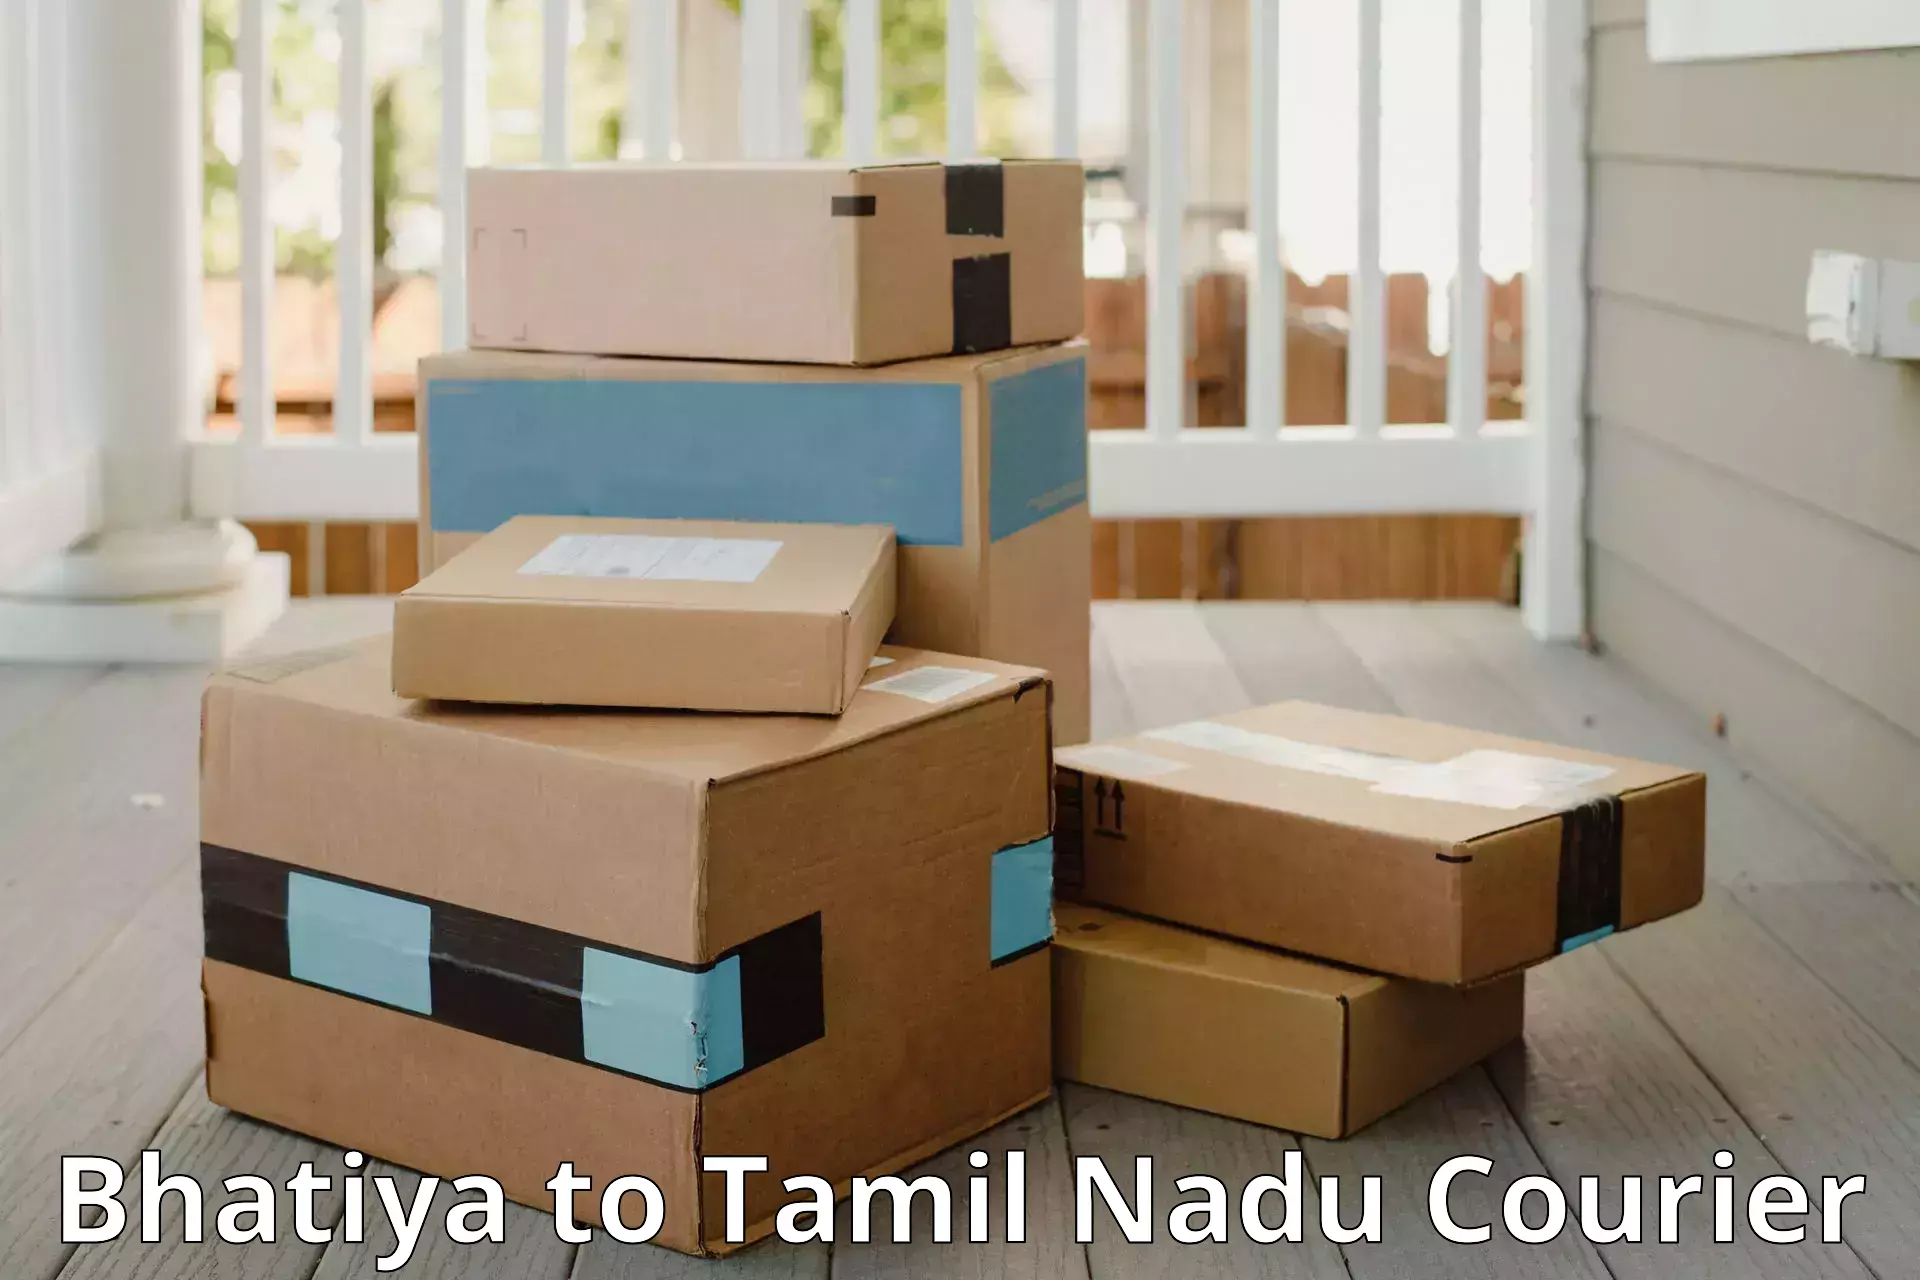 Luggage transport deals Bhatiya to Tamil Nadu